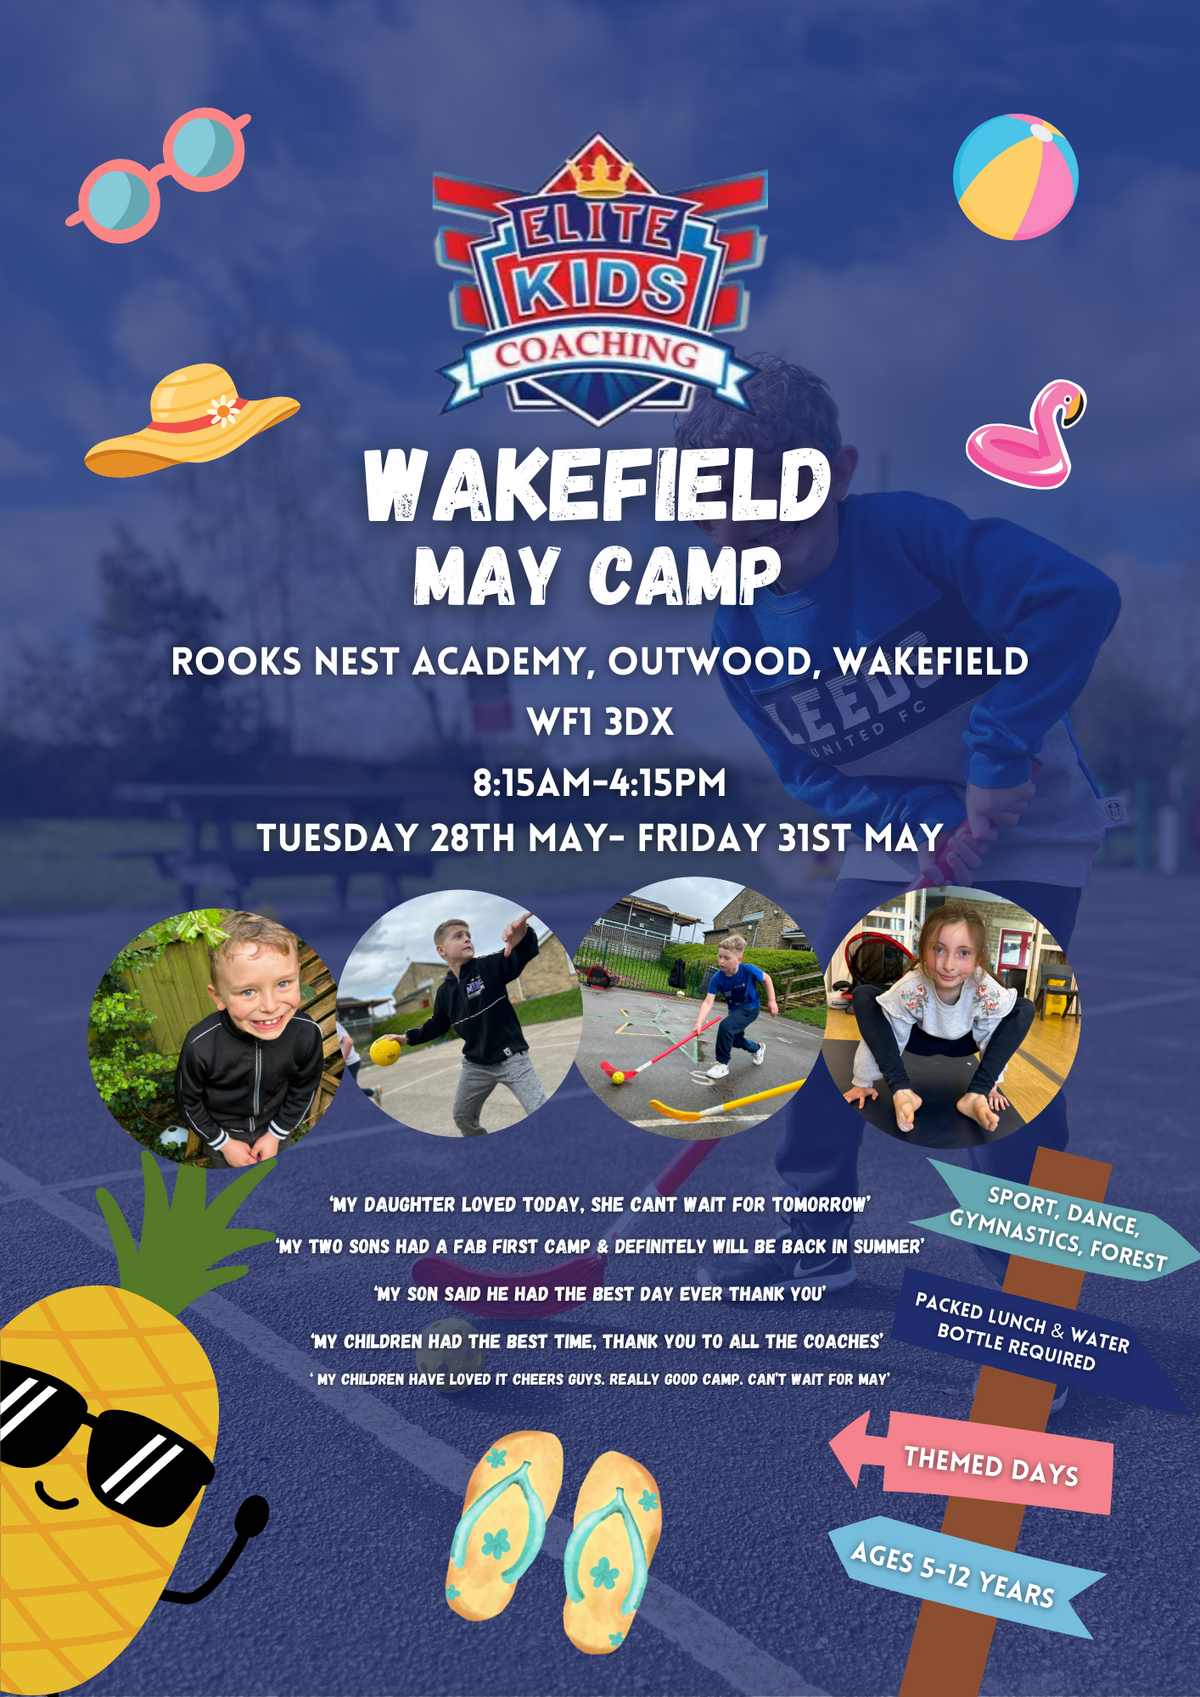 Wakefield May Camp Friday 31st May